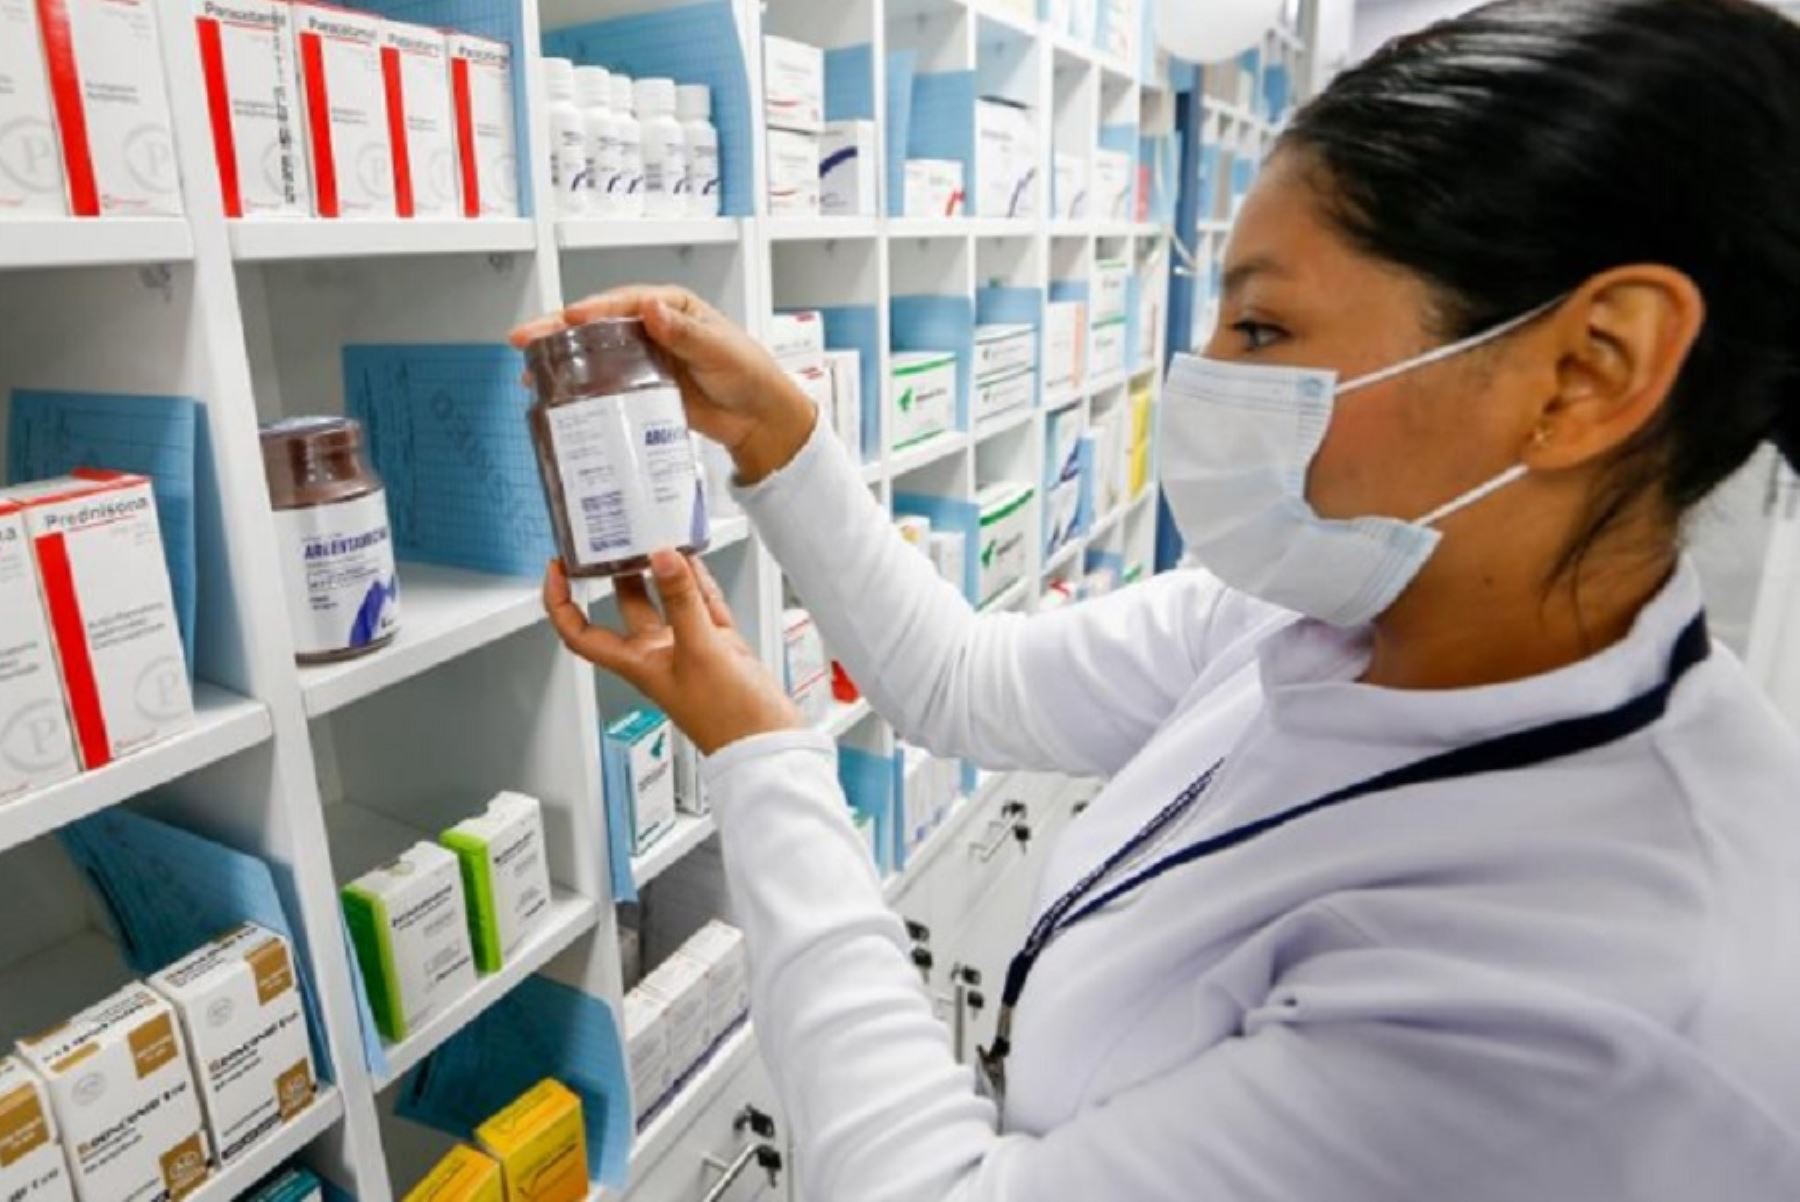 La Digemid ratifica su compromiso de seguir velando por la calidad de los medicamentos que autoriza para su comercialización en el país. ANDINA/ Minsa.